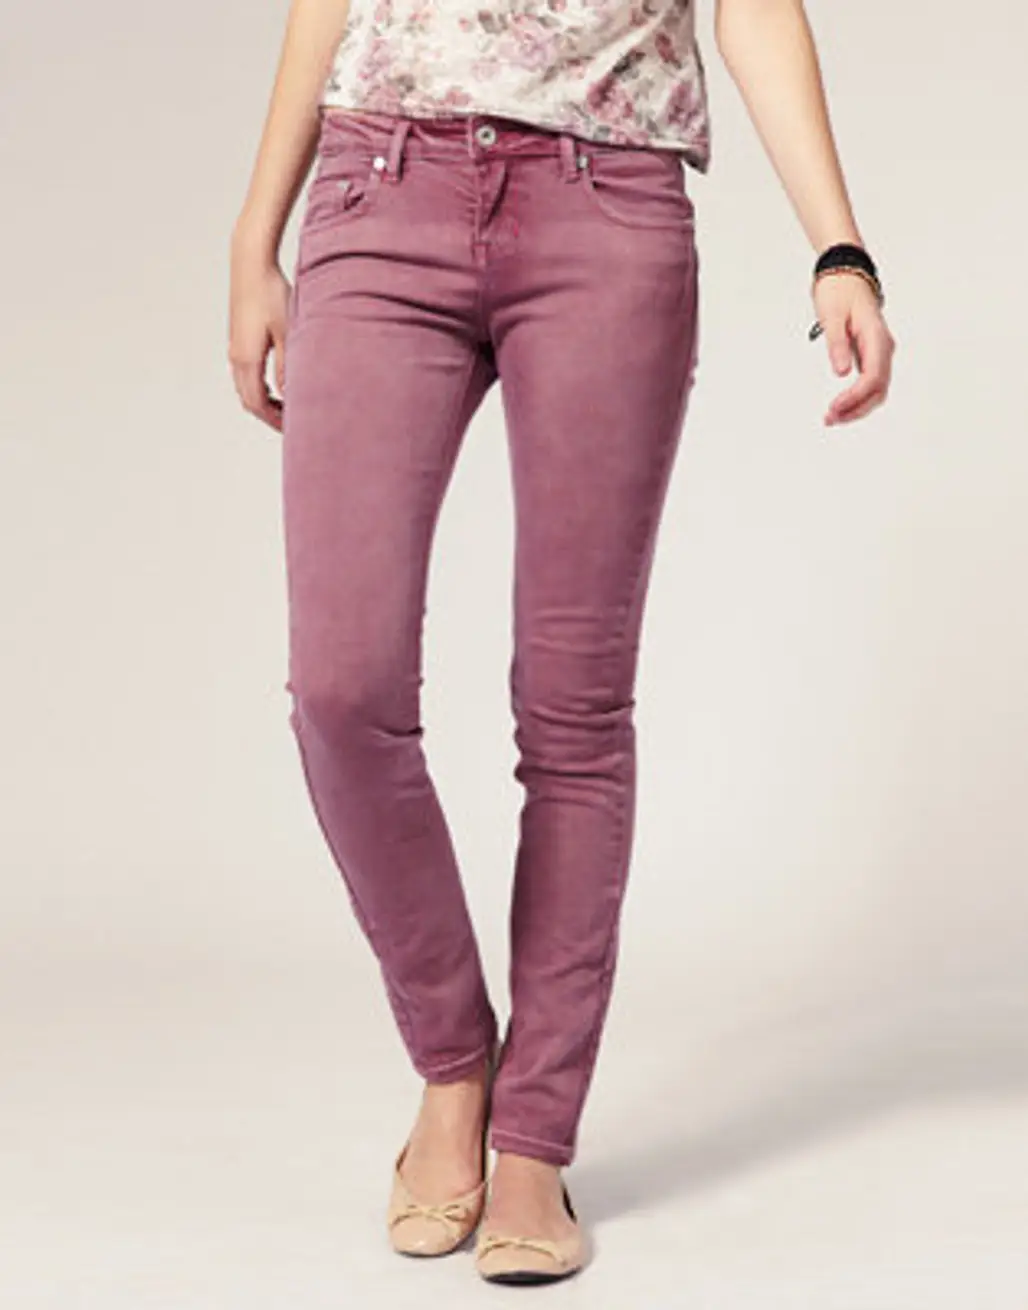 ASOS Rose Skinny Jeans